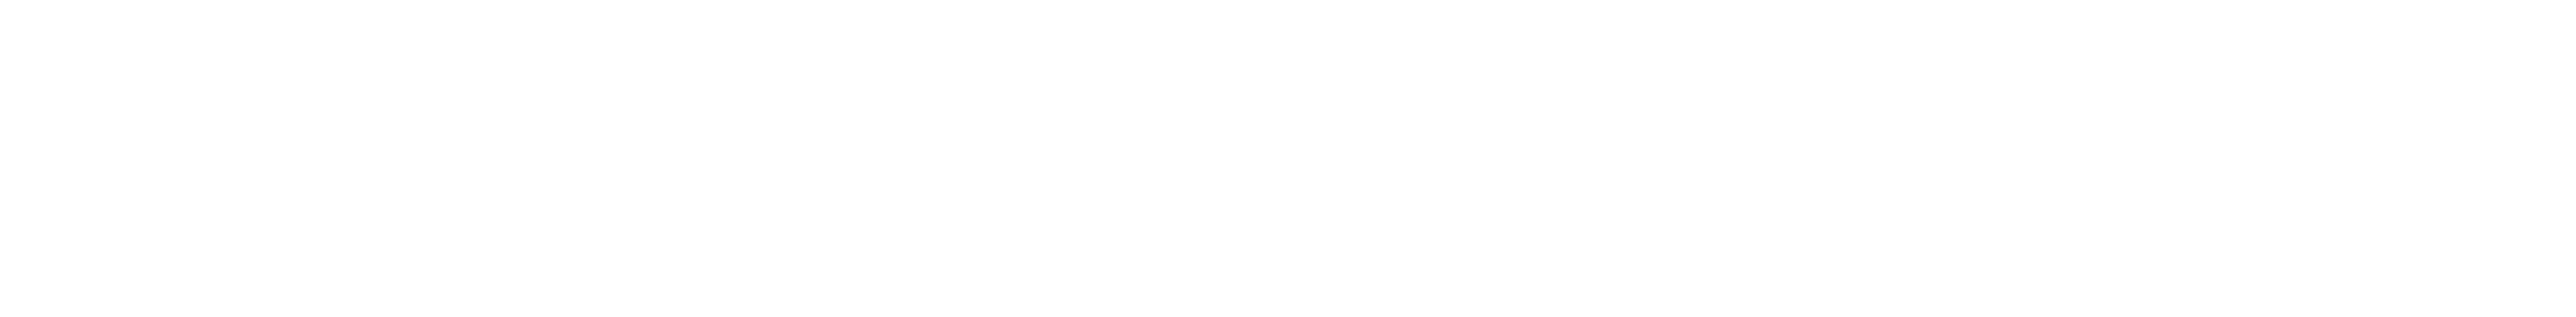 WorkSmarter Logo